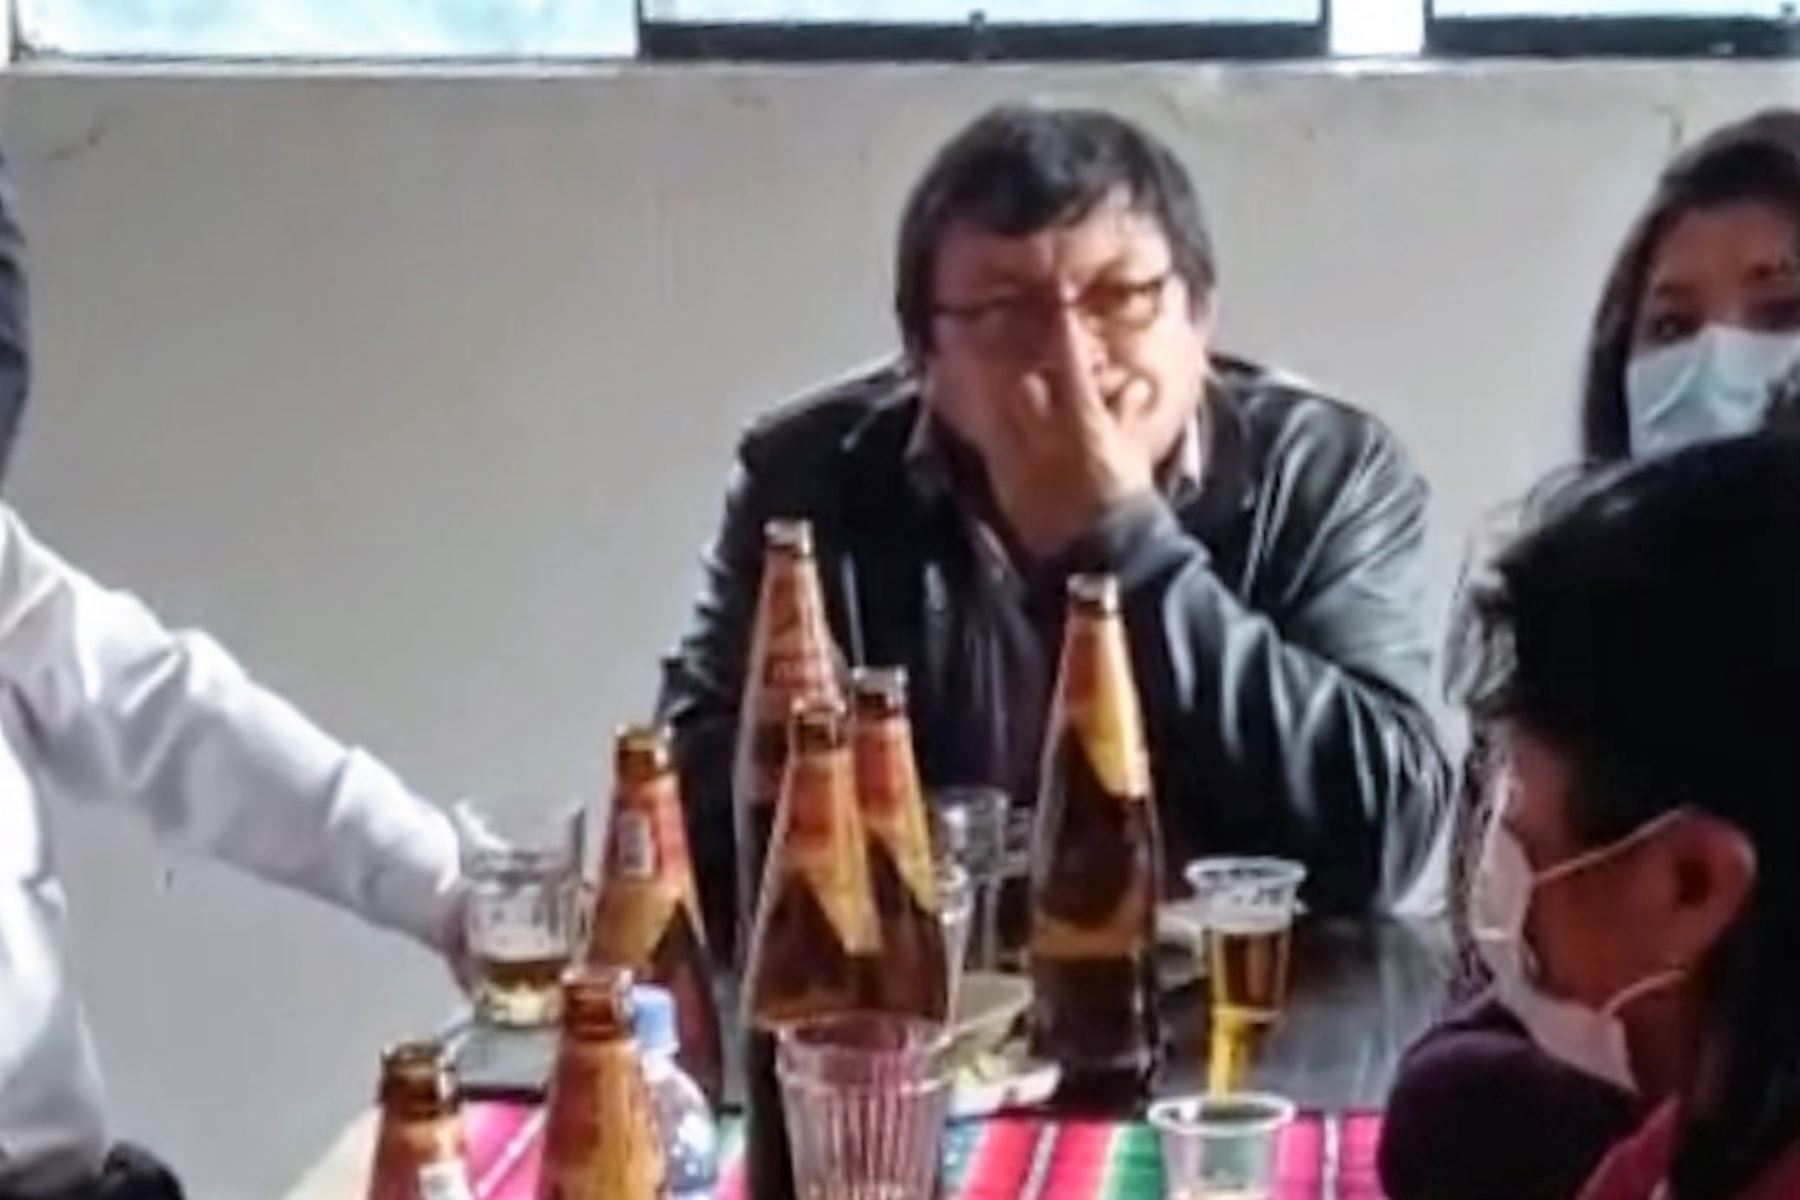 Alcalde cusqueño participó en reunión social con bebidas alcohólicas y sin mascarilla.